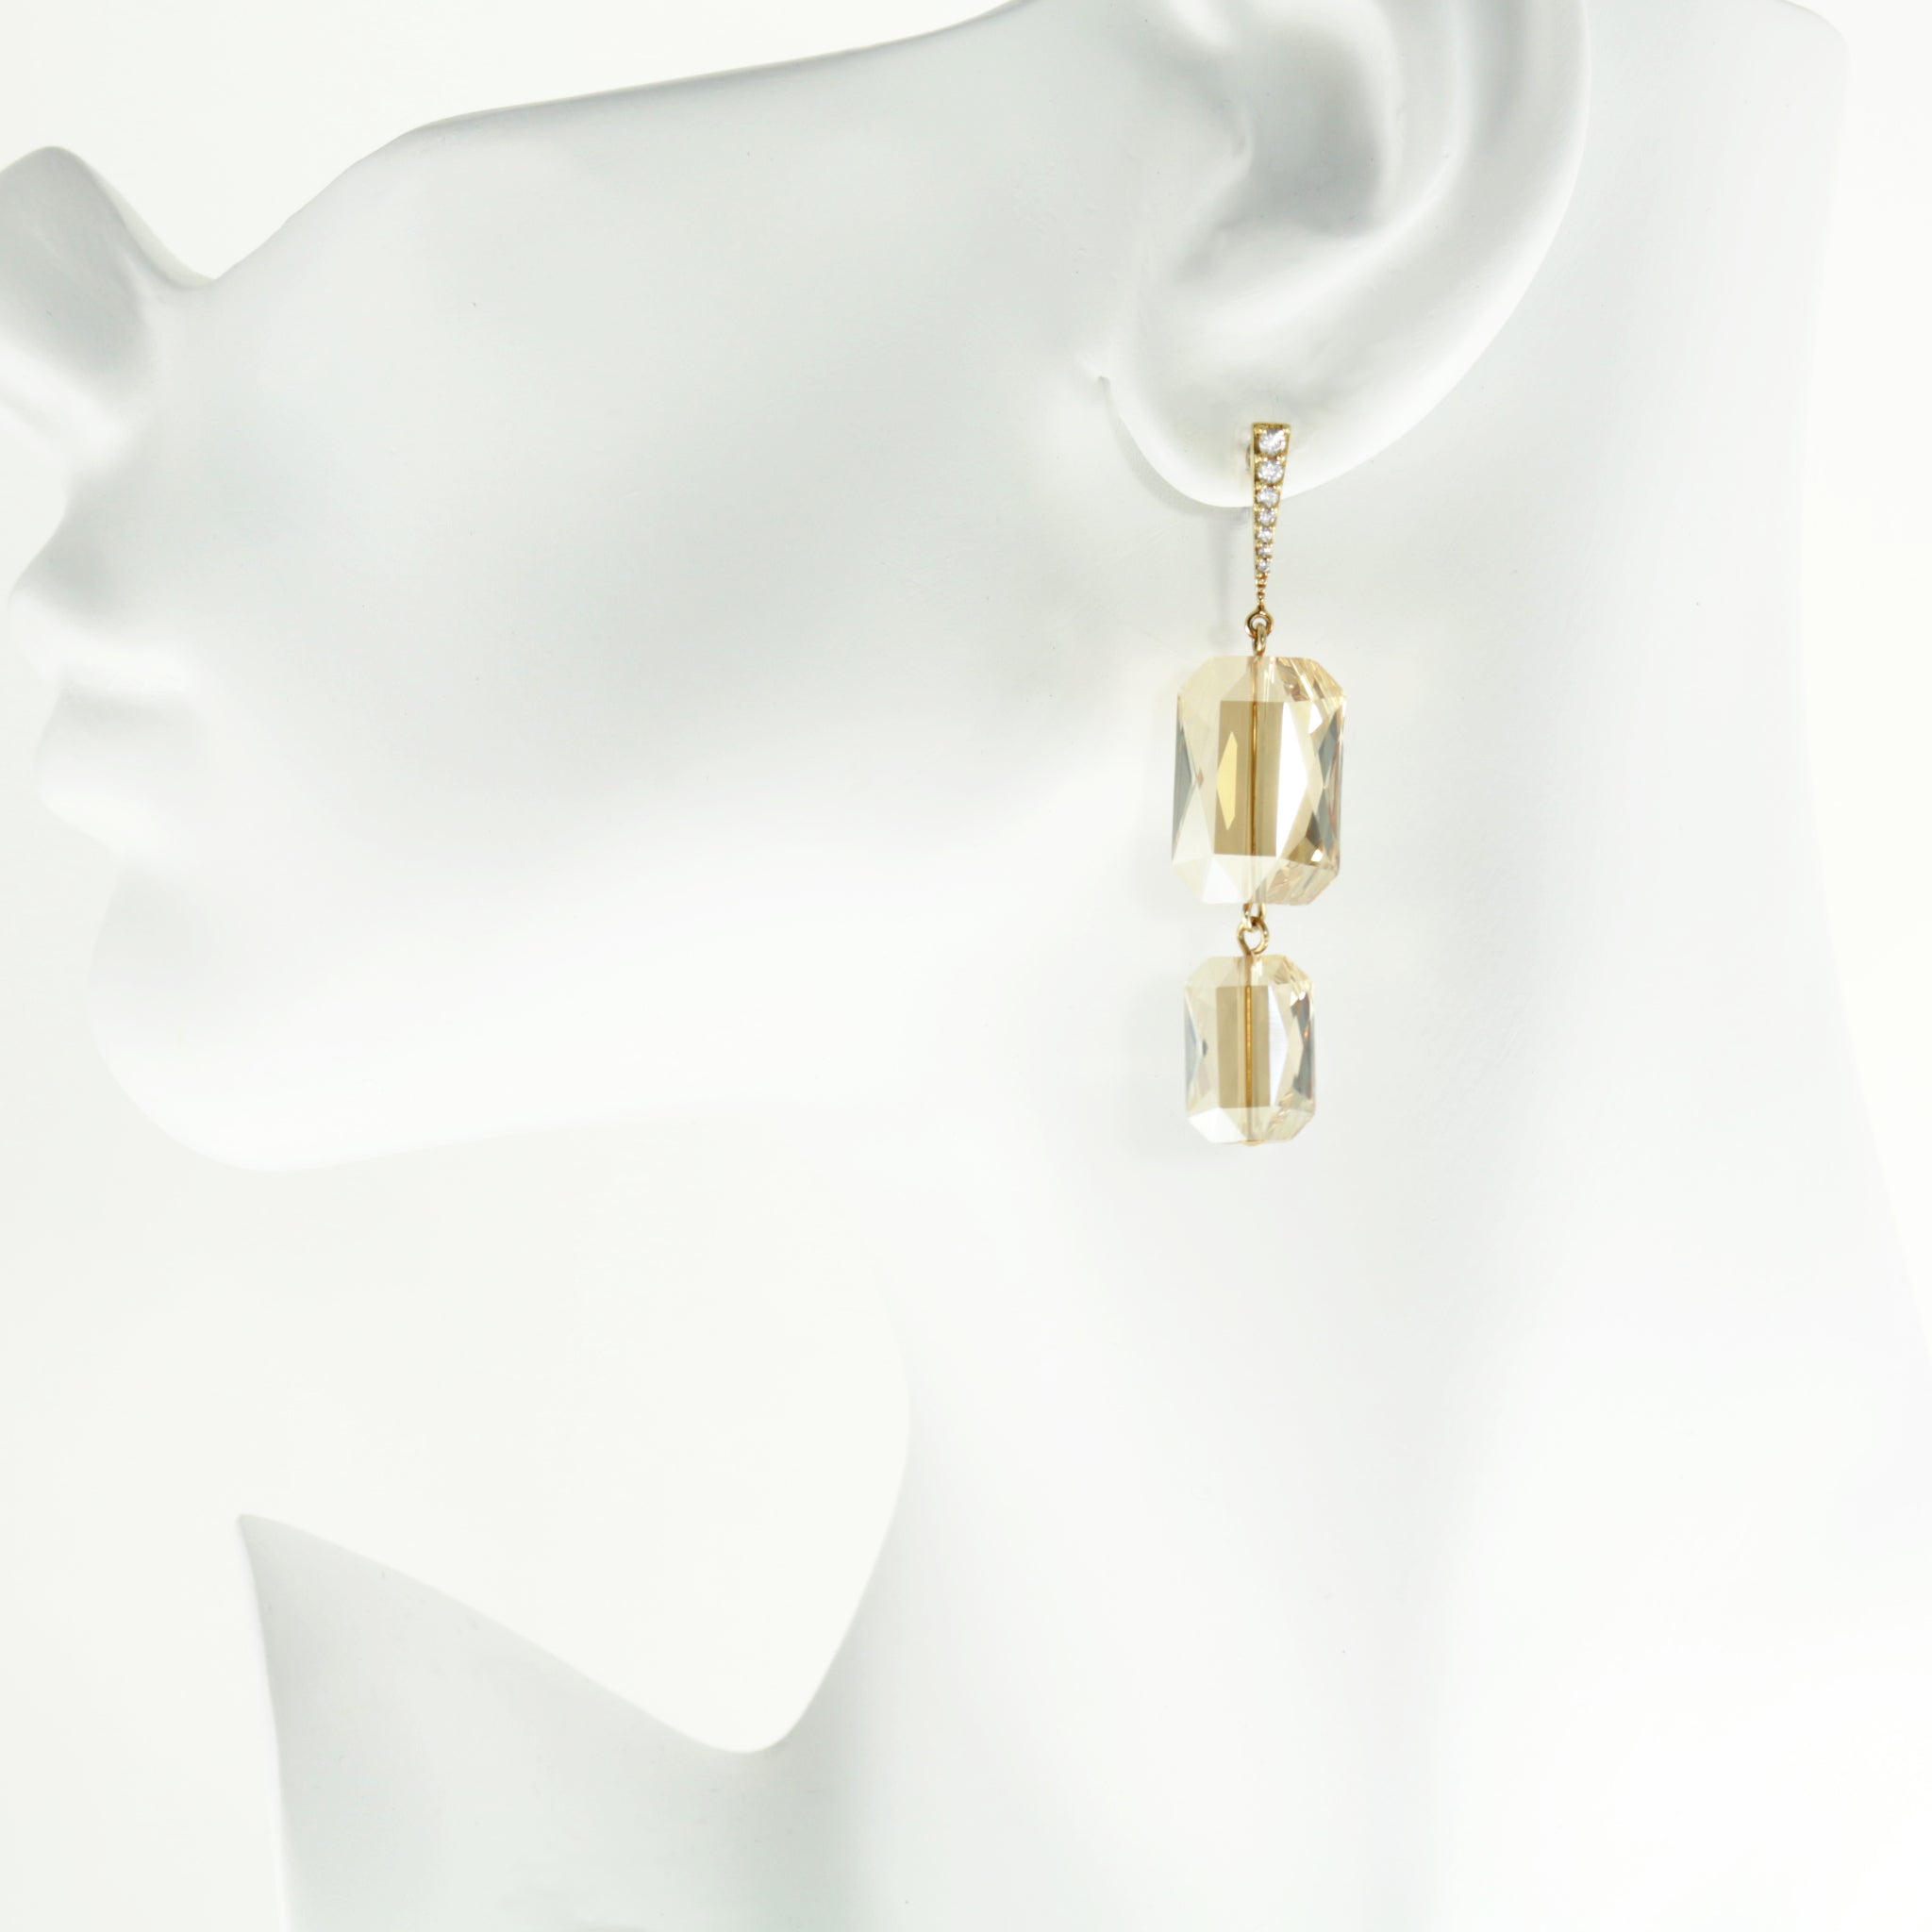 Plaza Earrings in Gold Shimmer